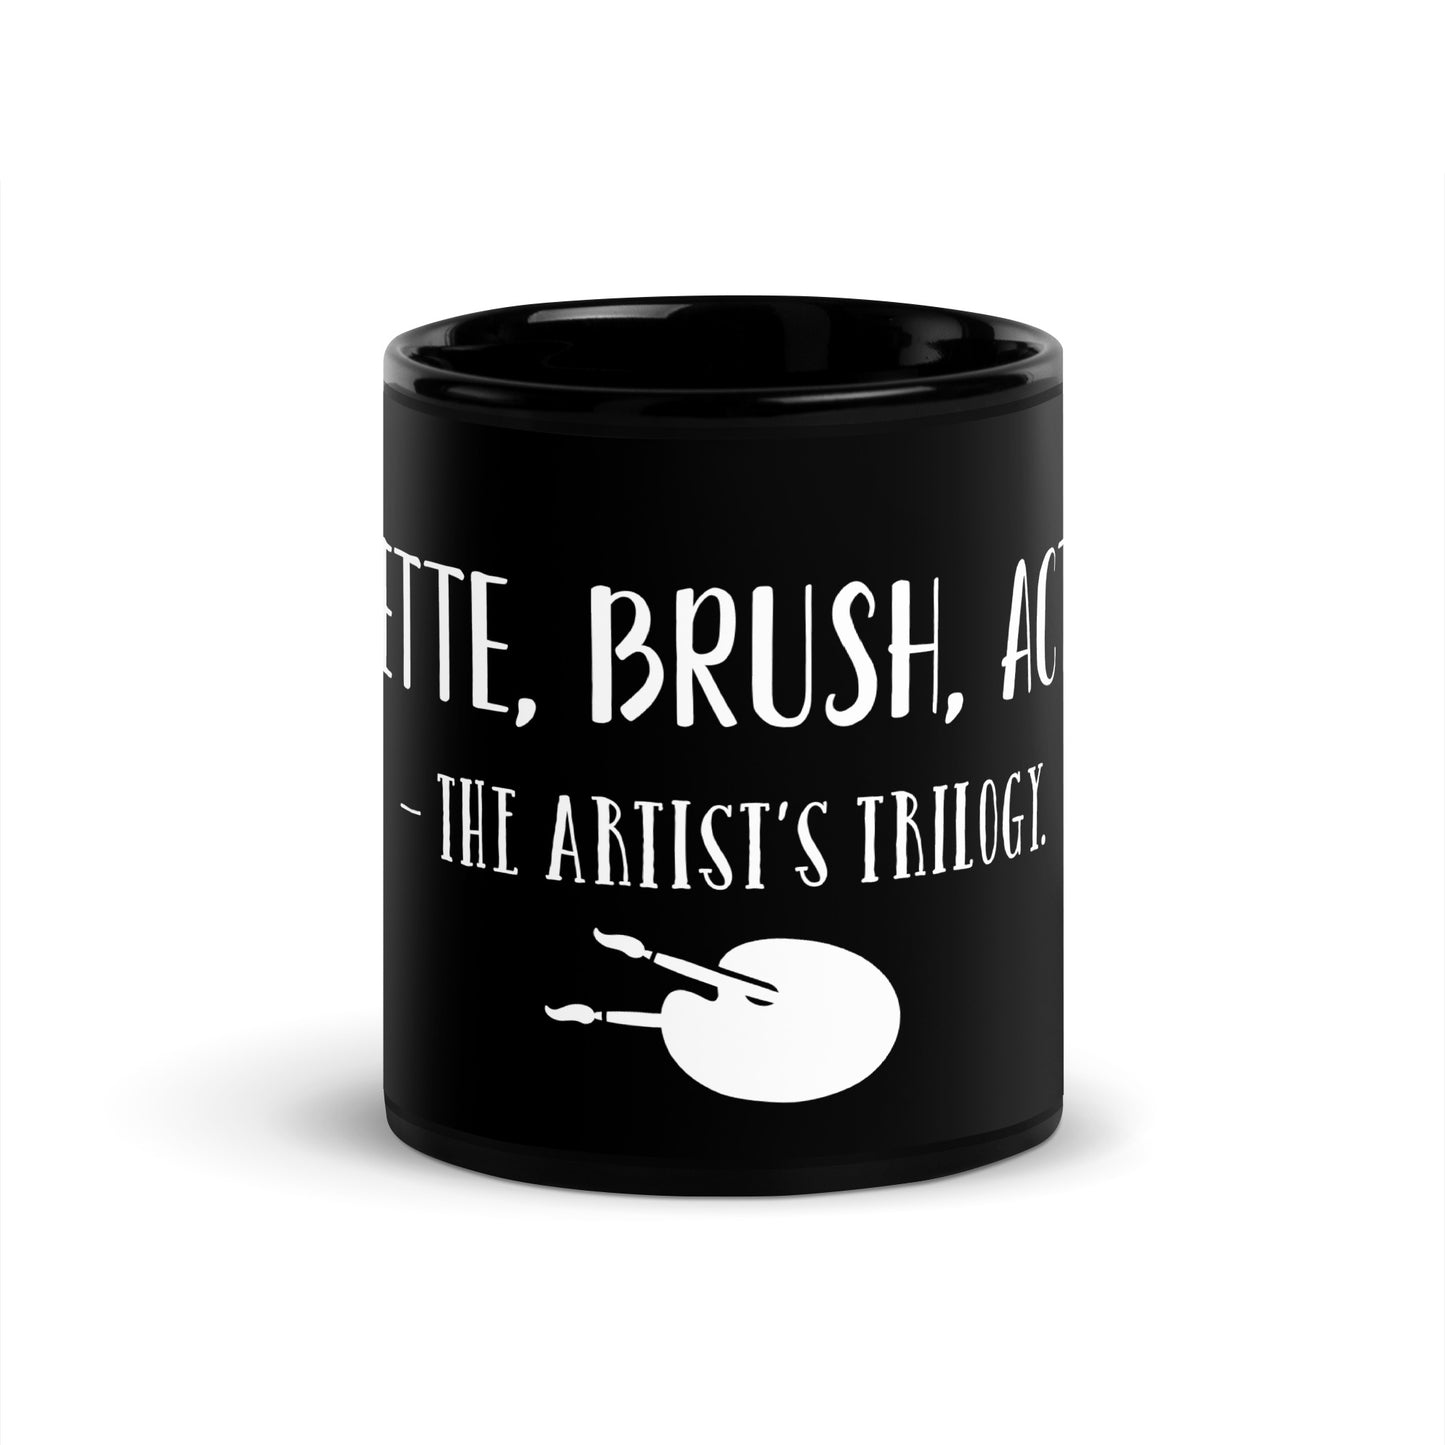 “Palette, brush, action - The artist’s trilogy.” - Glossy Mug